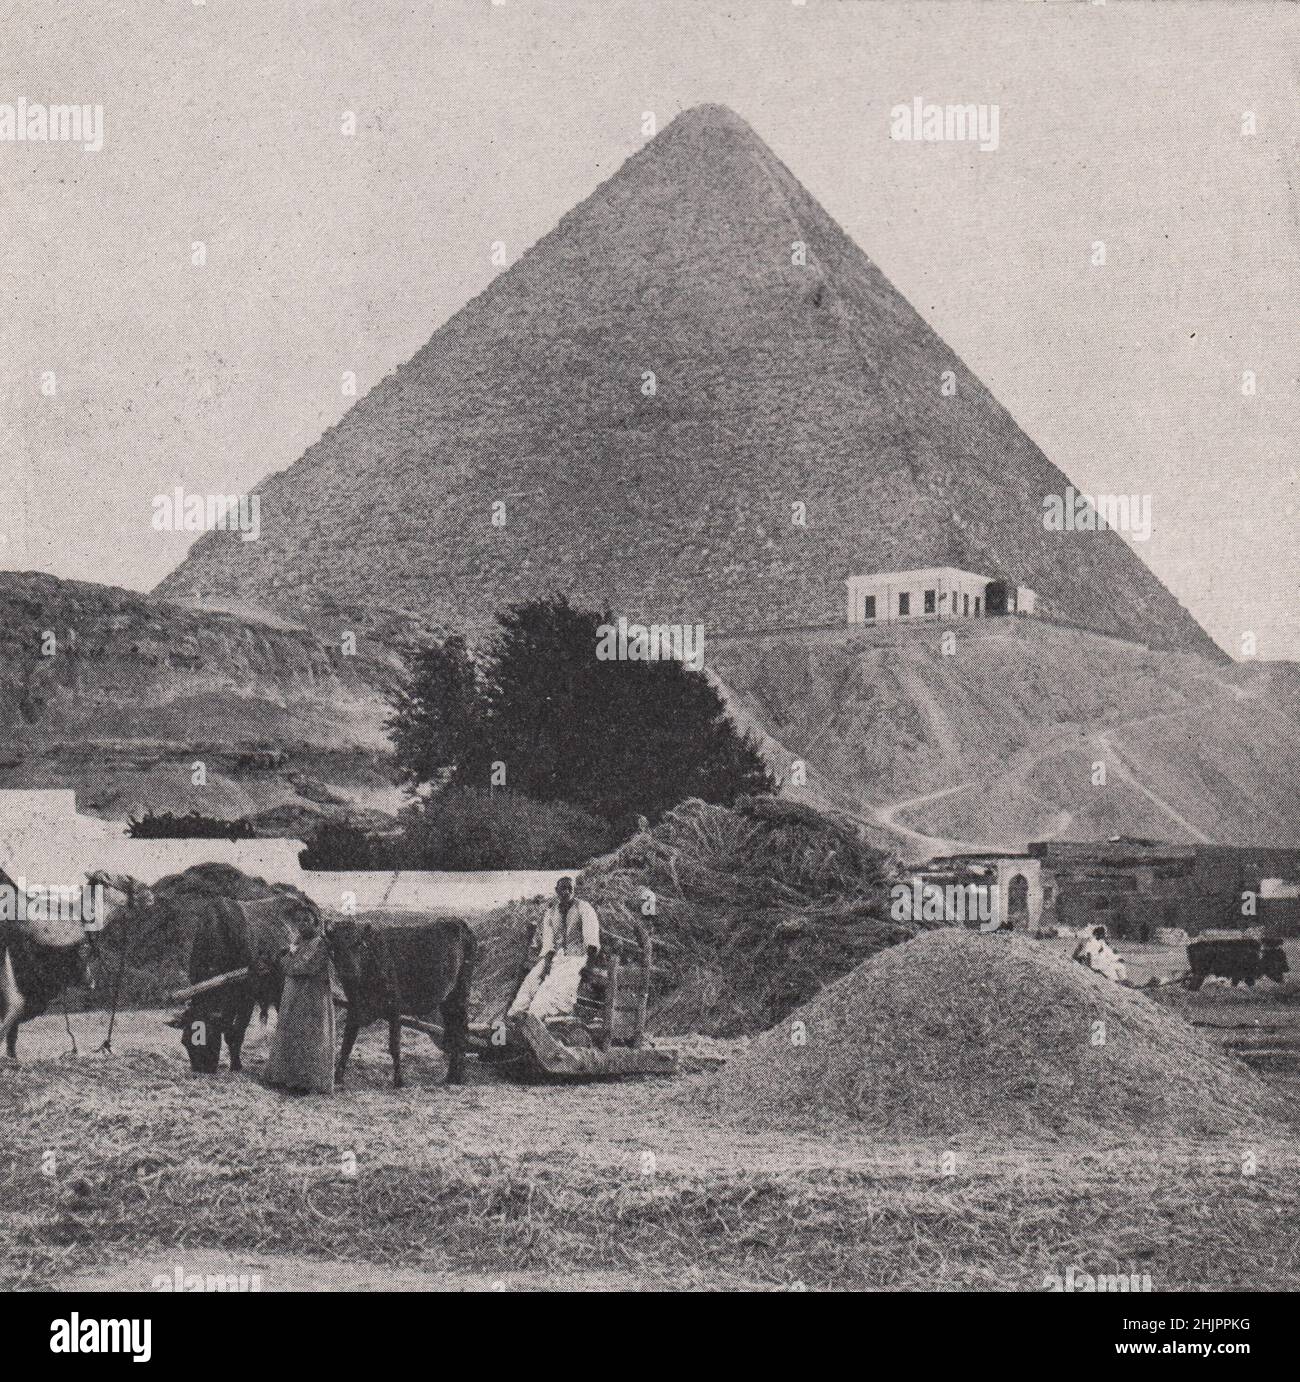 Ancien monument et méthodes de l'Orient immuant. Égypte. Le Caire (1923) Banque D'Images